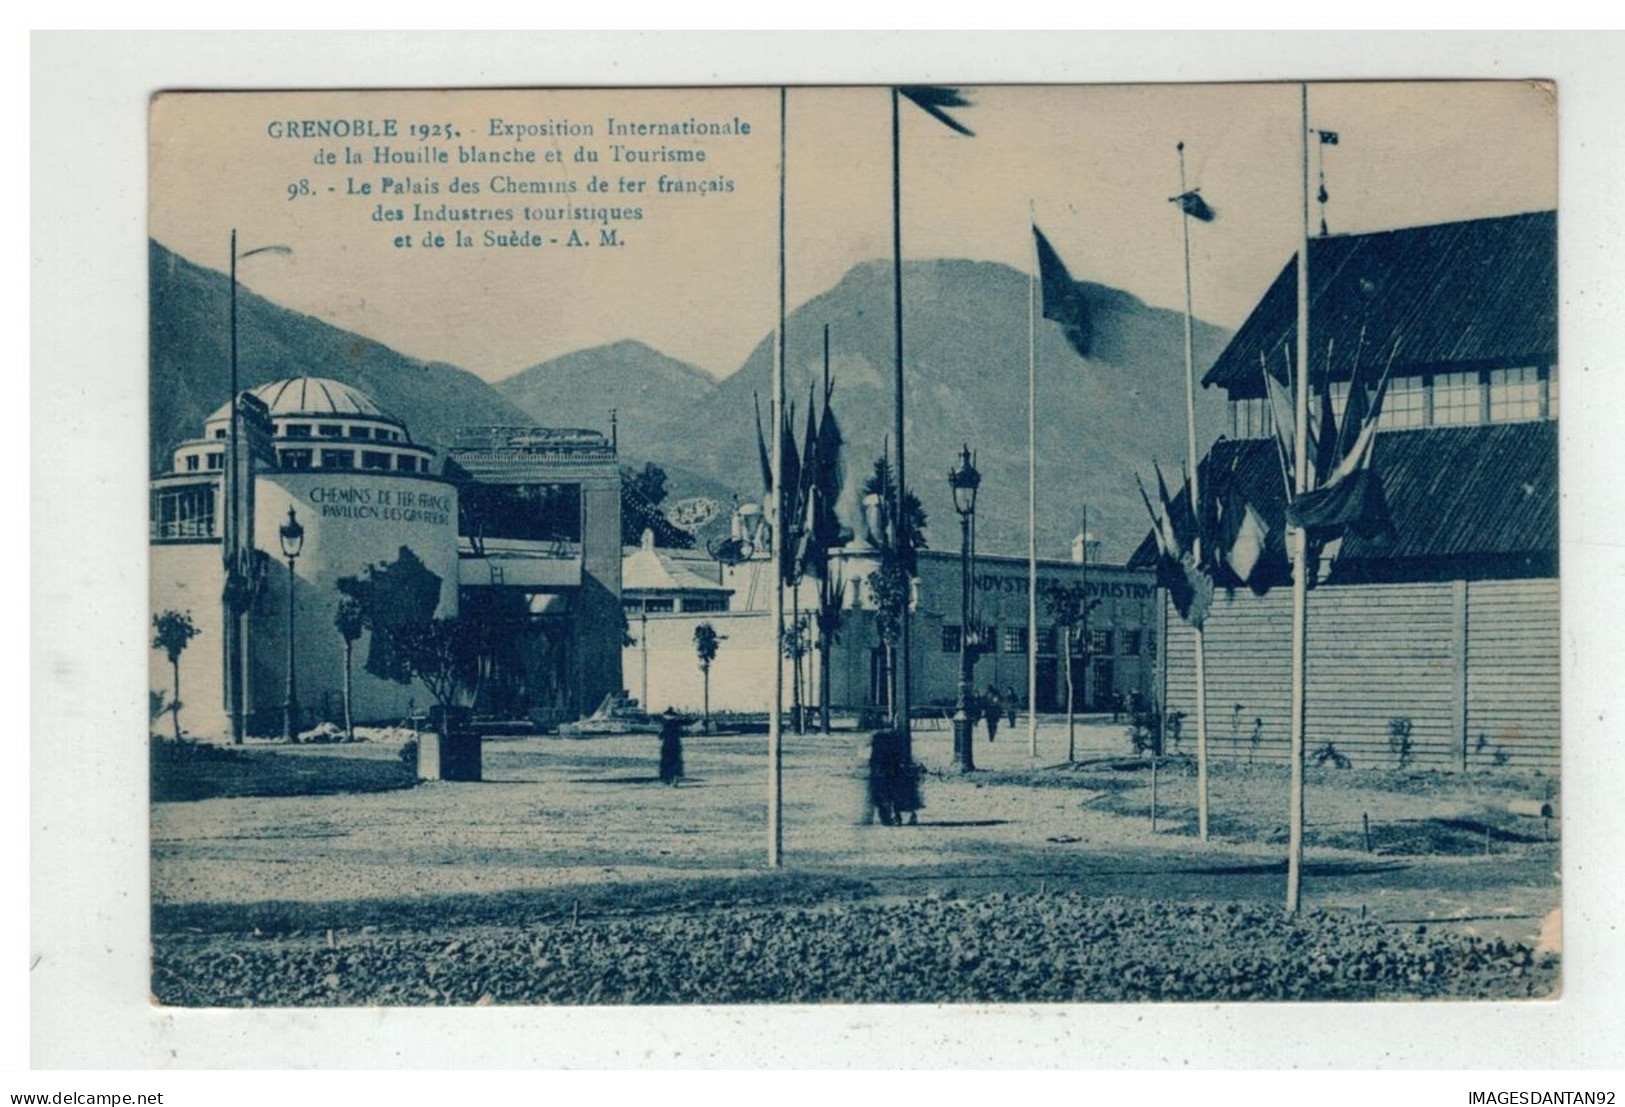 38 GRENOBLE 1925 EXPOSITION INTERNATIONALE DE LA HOUILLE BLANCHE PALAIS DES CHEMINS DE FER FRANCAIS NÂ°98 - Grenoble